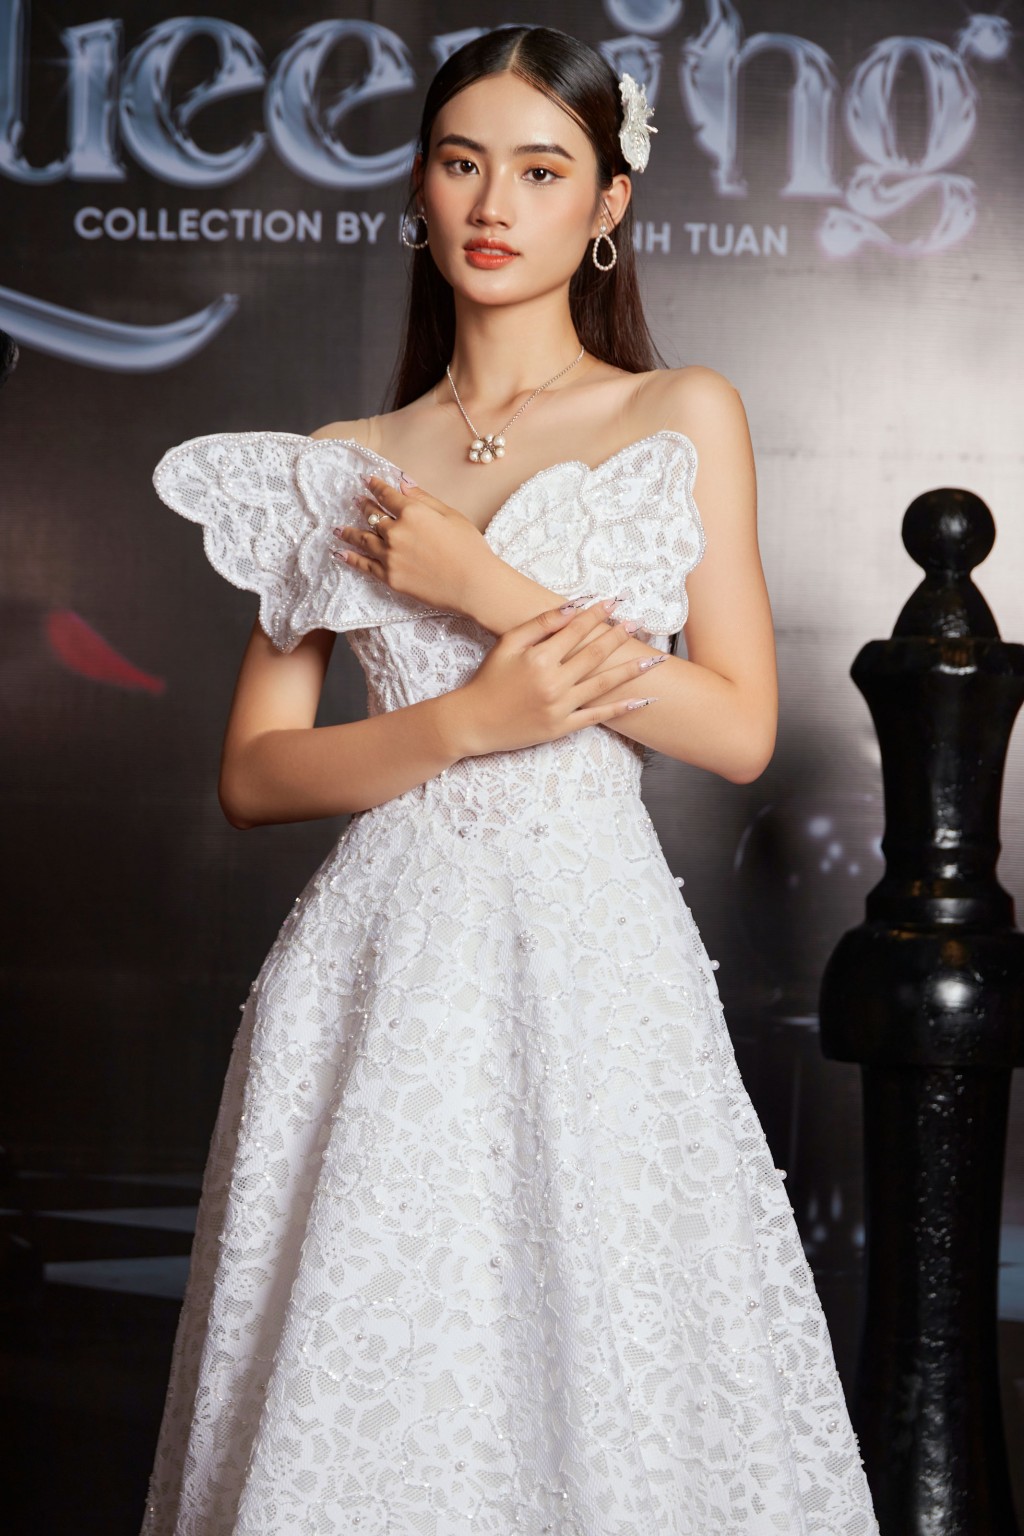 Top 3 Miss World Vietnam 2023 khoe sắc trong trang phục của NTK Nguyễn Minh Tuấn